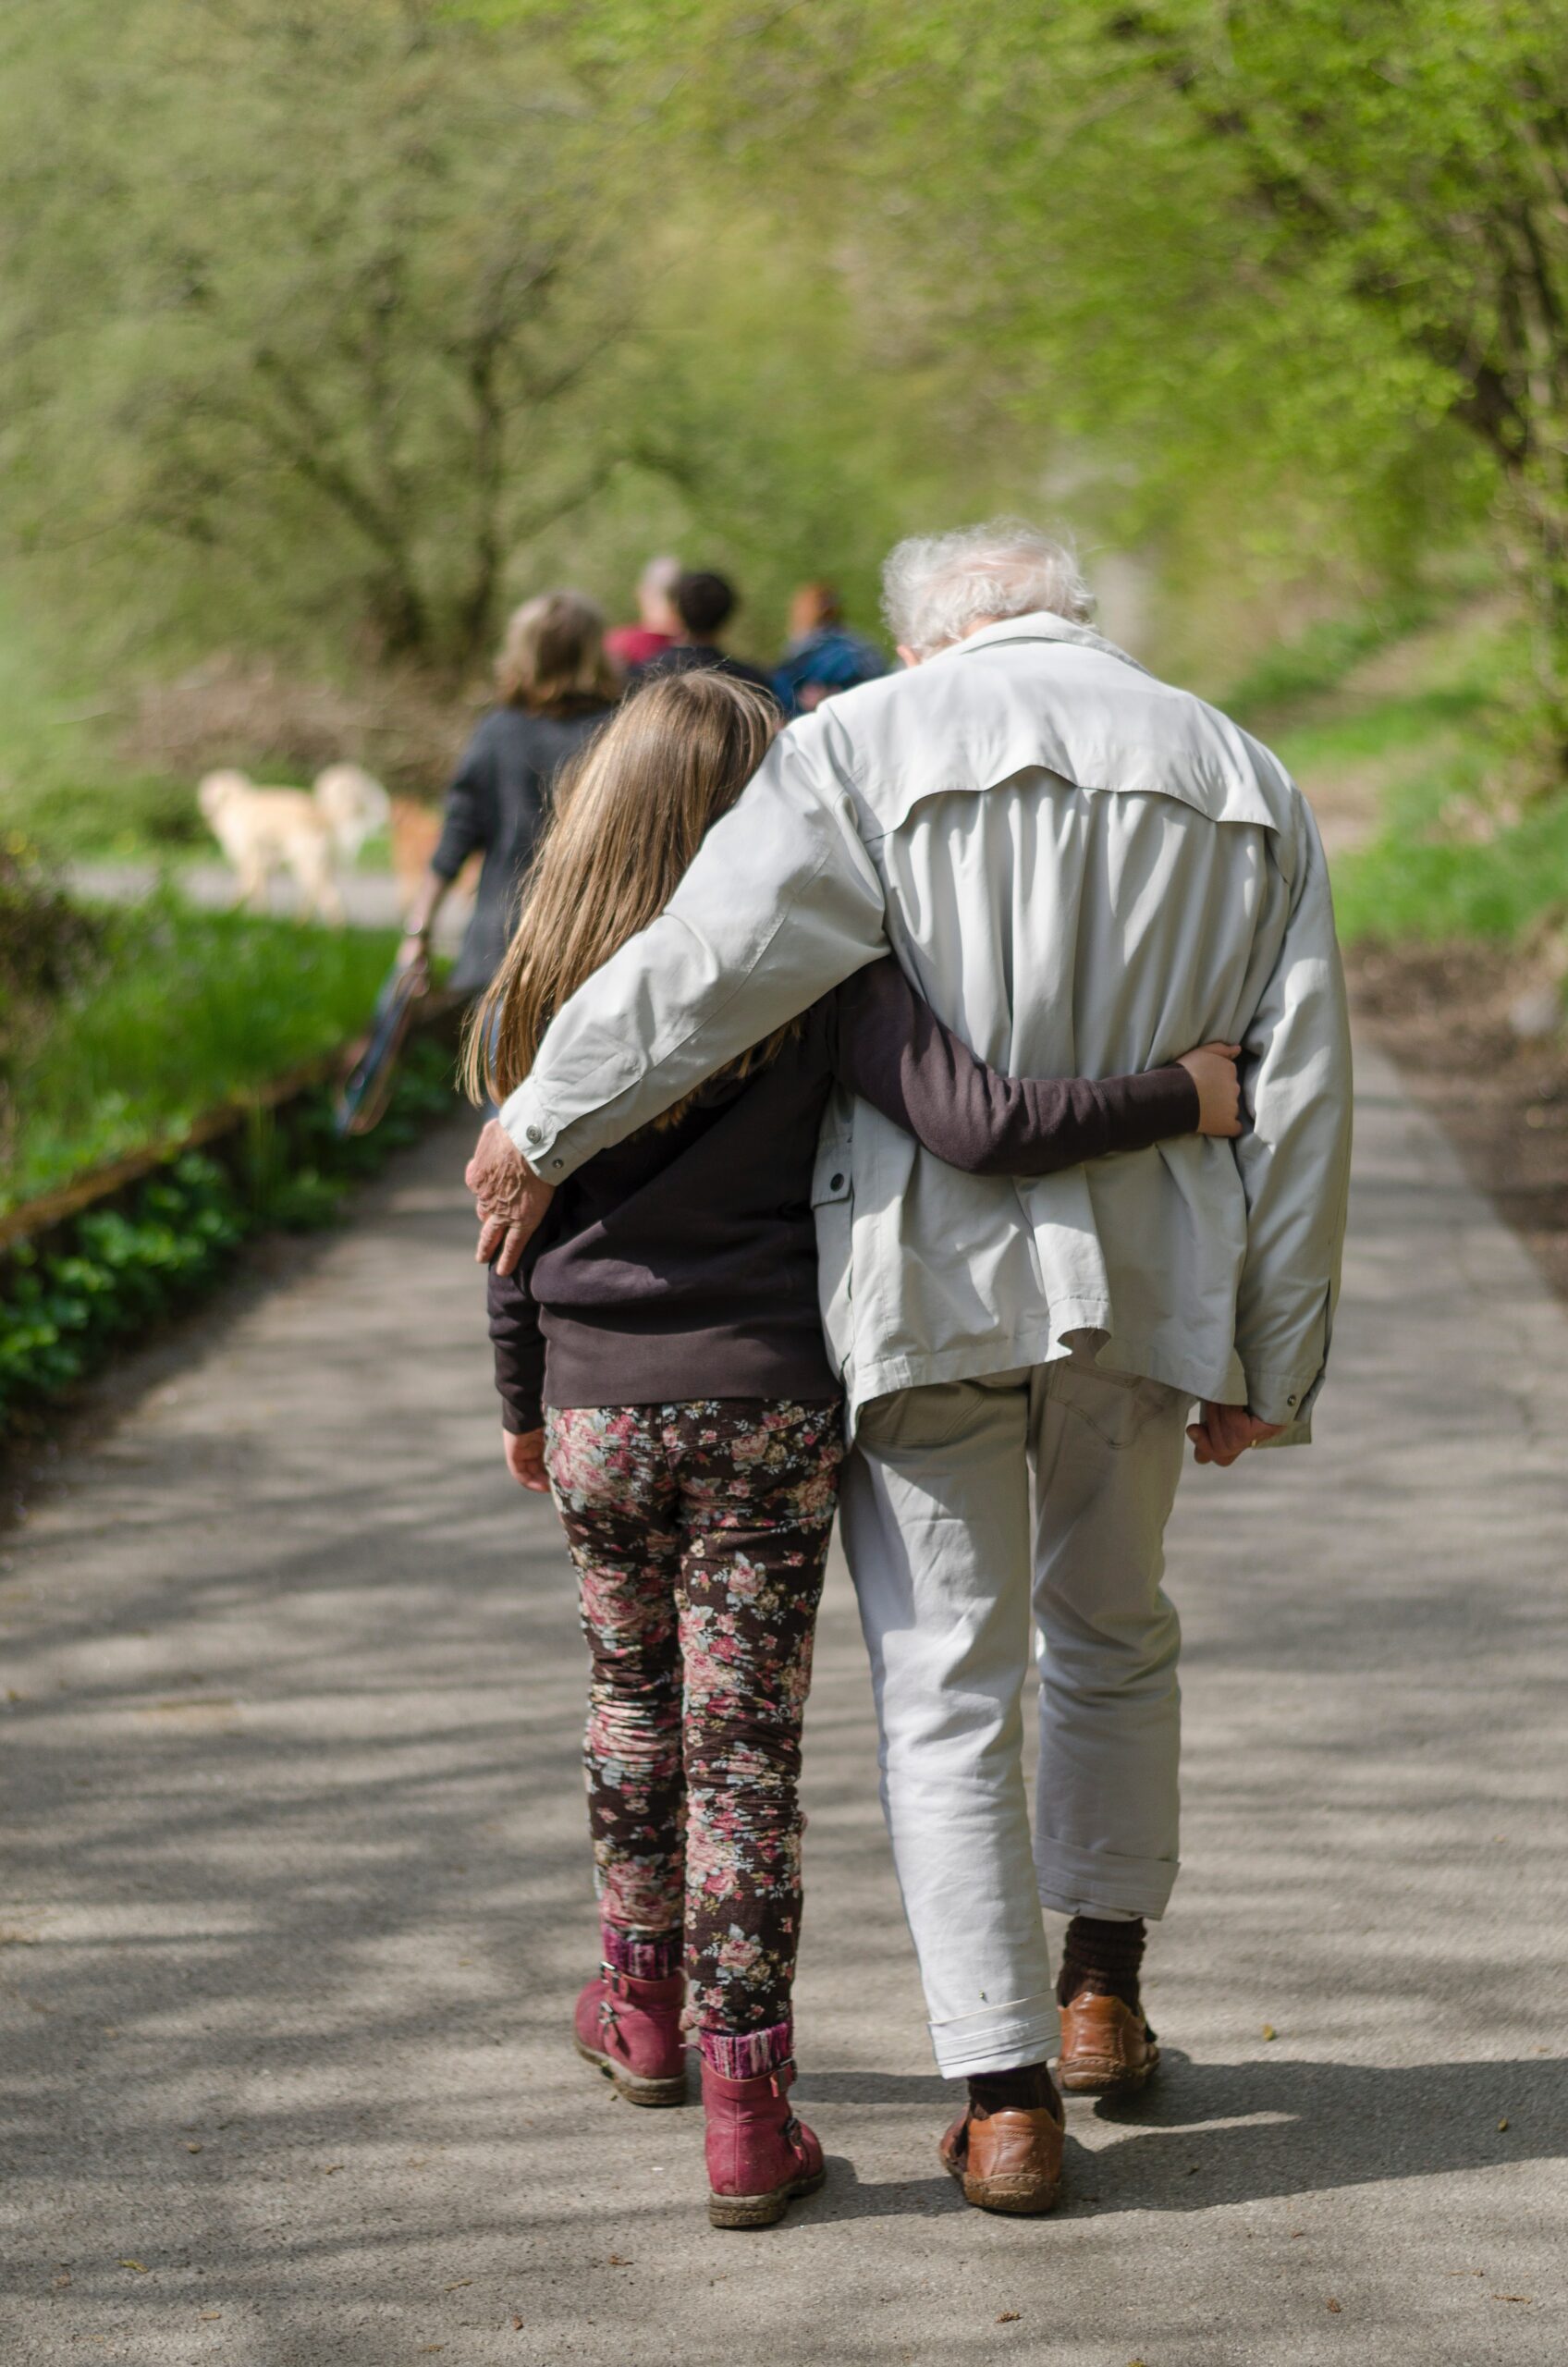 Elderly man walking with grandchild.